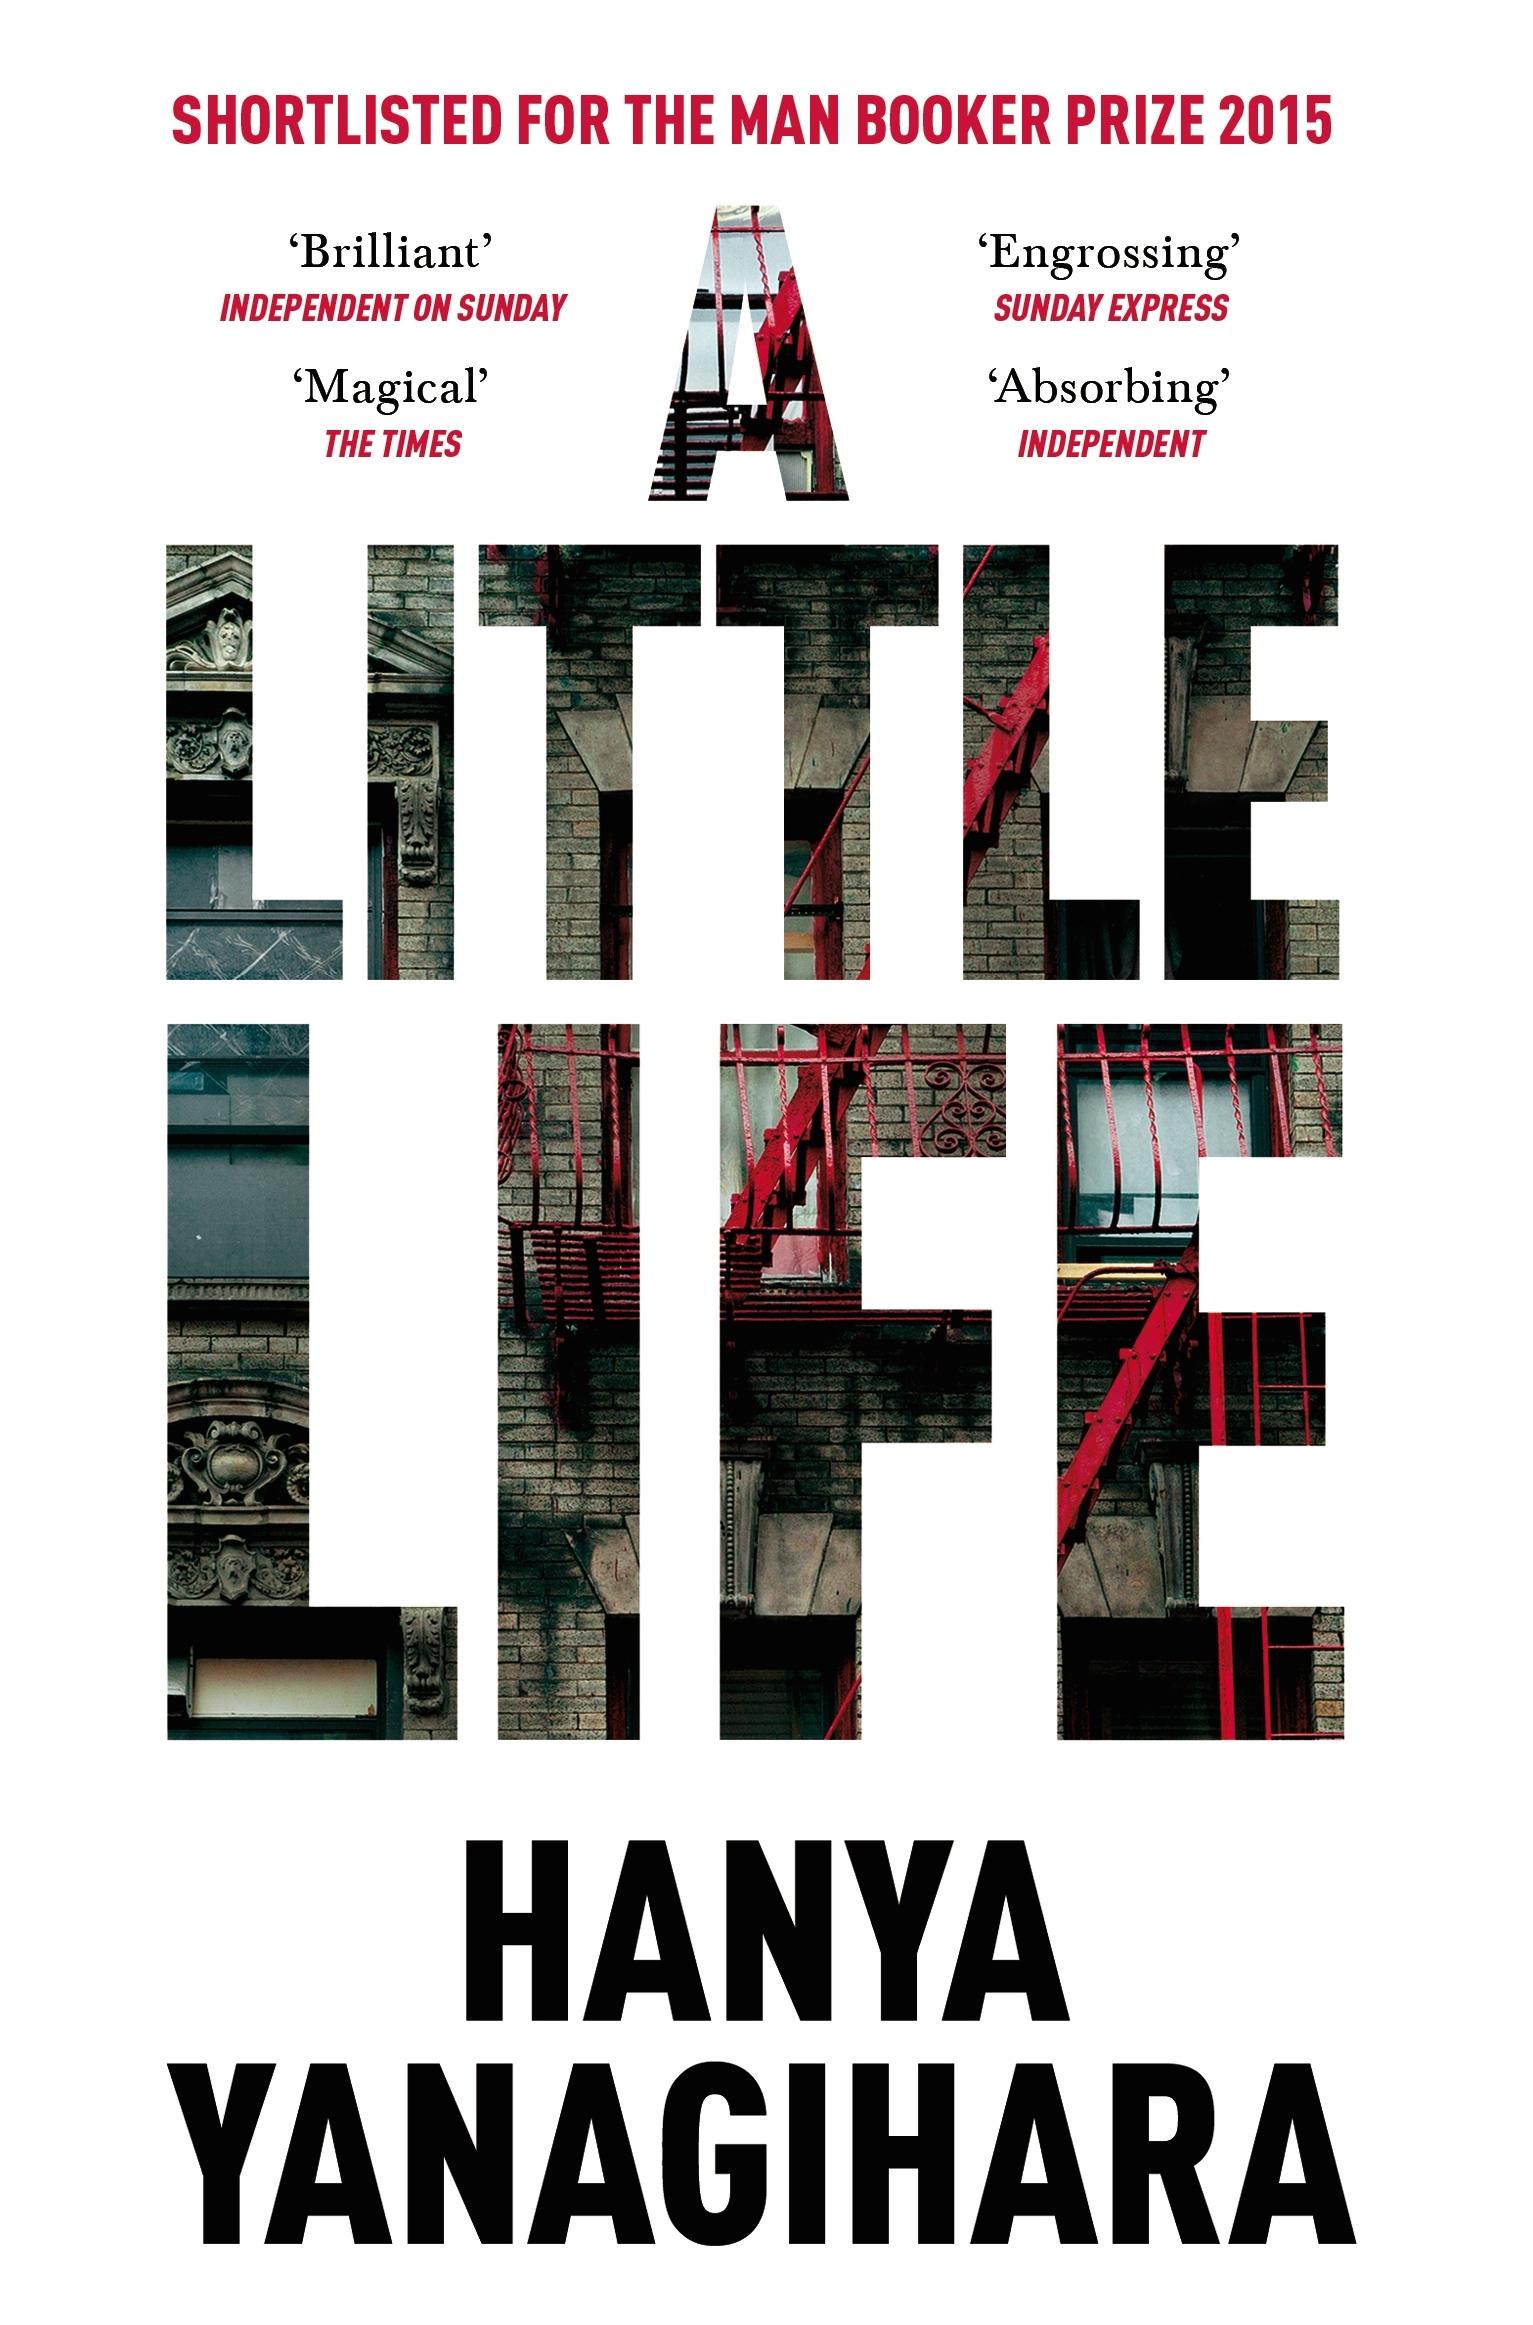 Hanya Yanagihara, Hanya Yanagihara: Little Life (2015, Pan Macmillan)